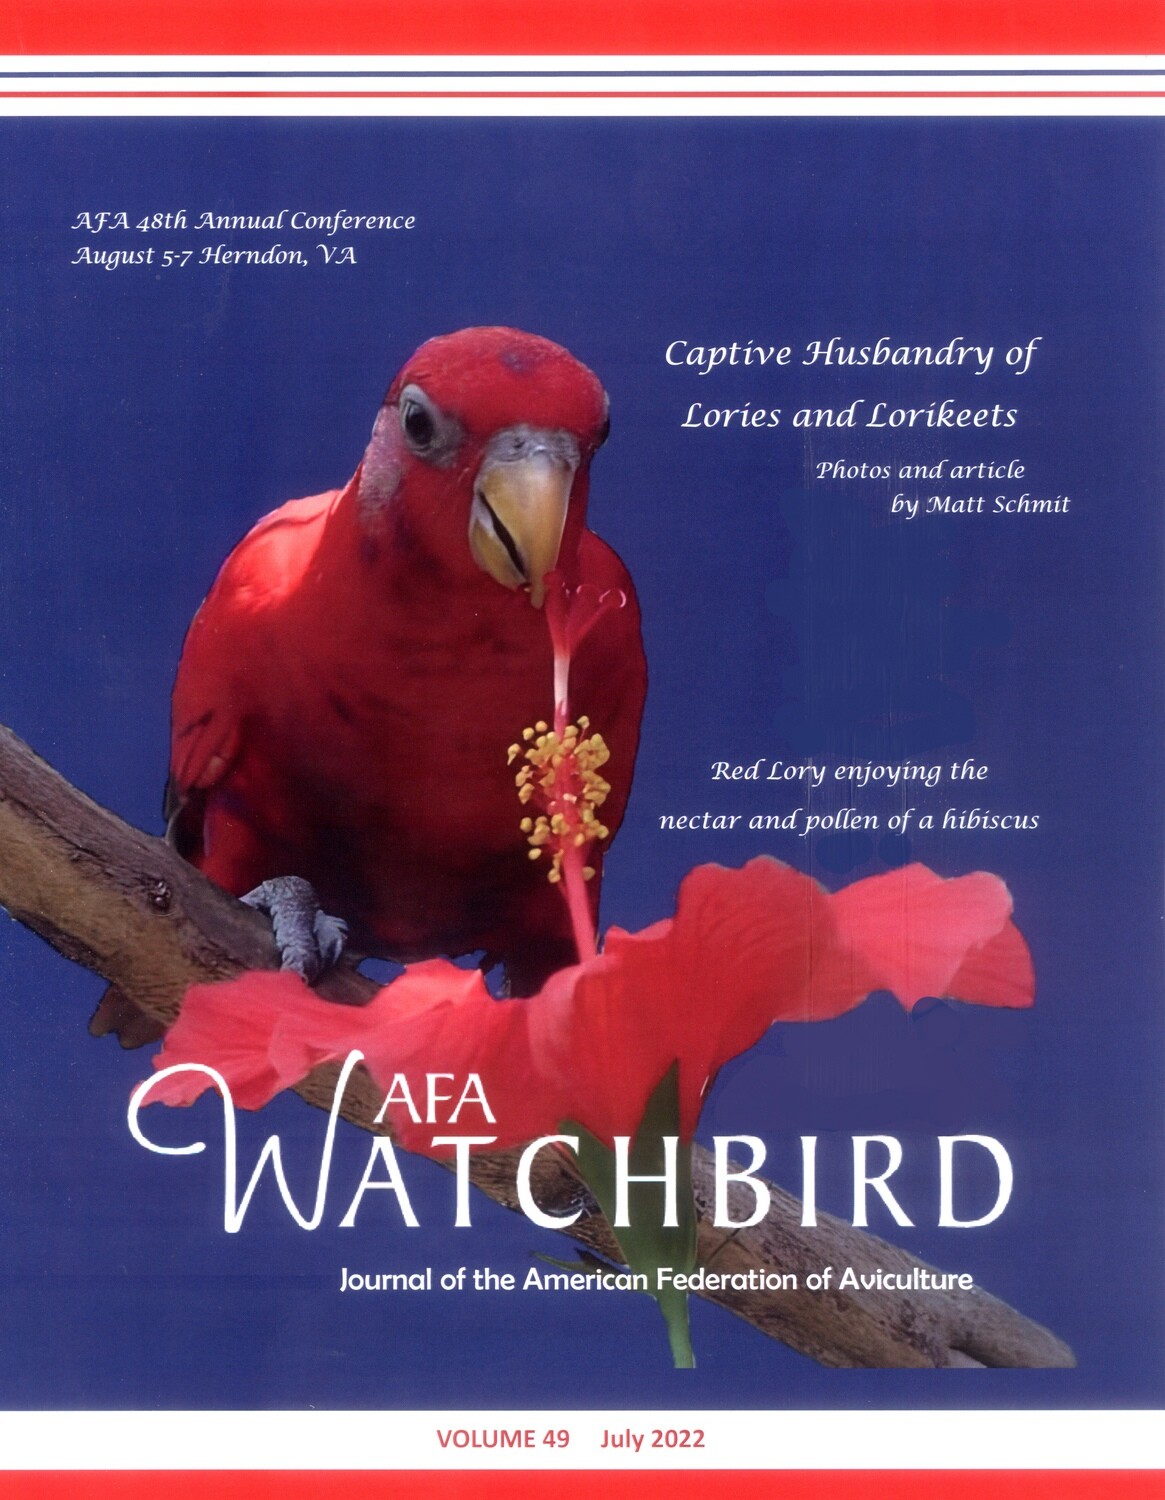 AFA Watchbird Journal  Volume 49, July 2022